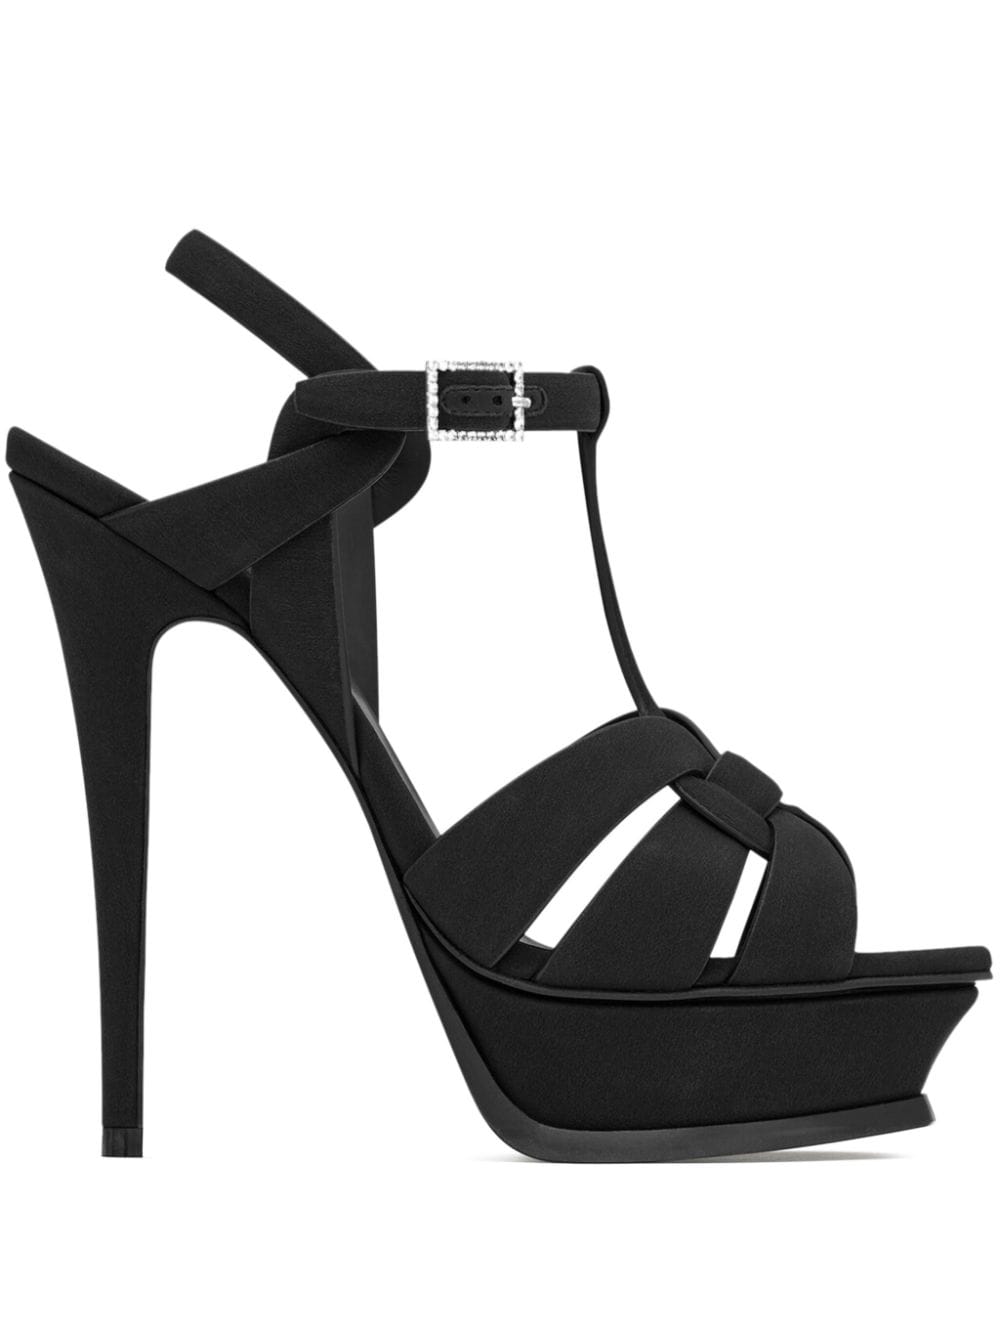 Shop Saint Laurent Tribute 105mm Platform Sandals In Black